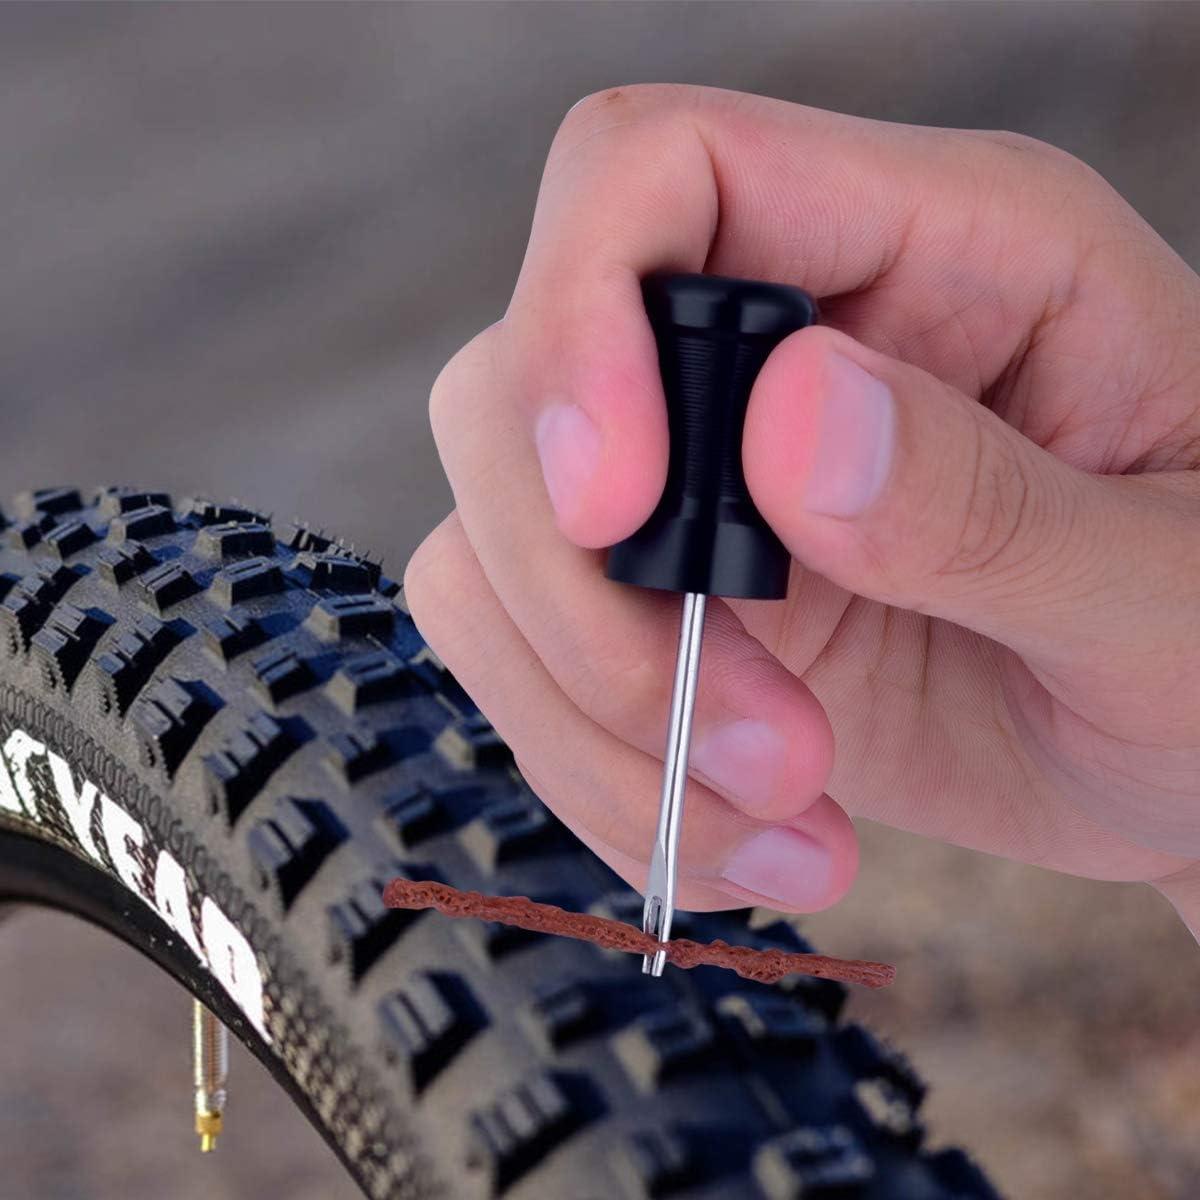 Bicycle Tubeless Tire Repair Tools Kit Mini MTB Road Bike Tyre